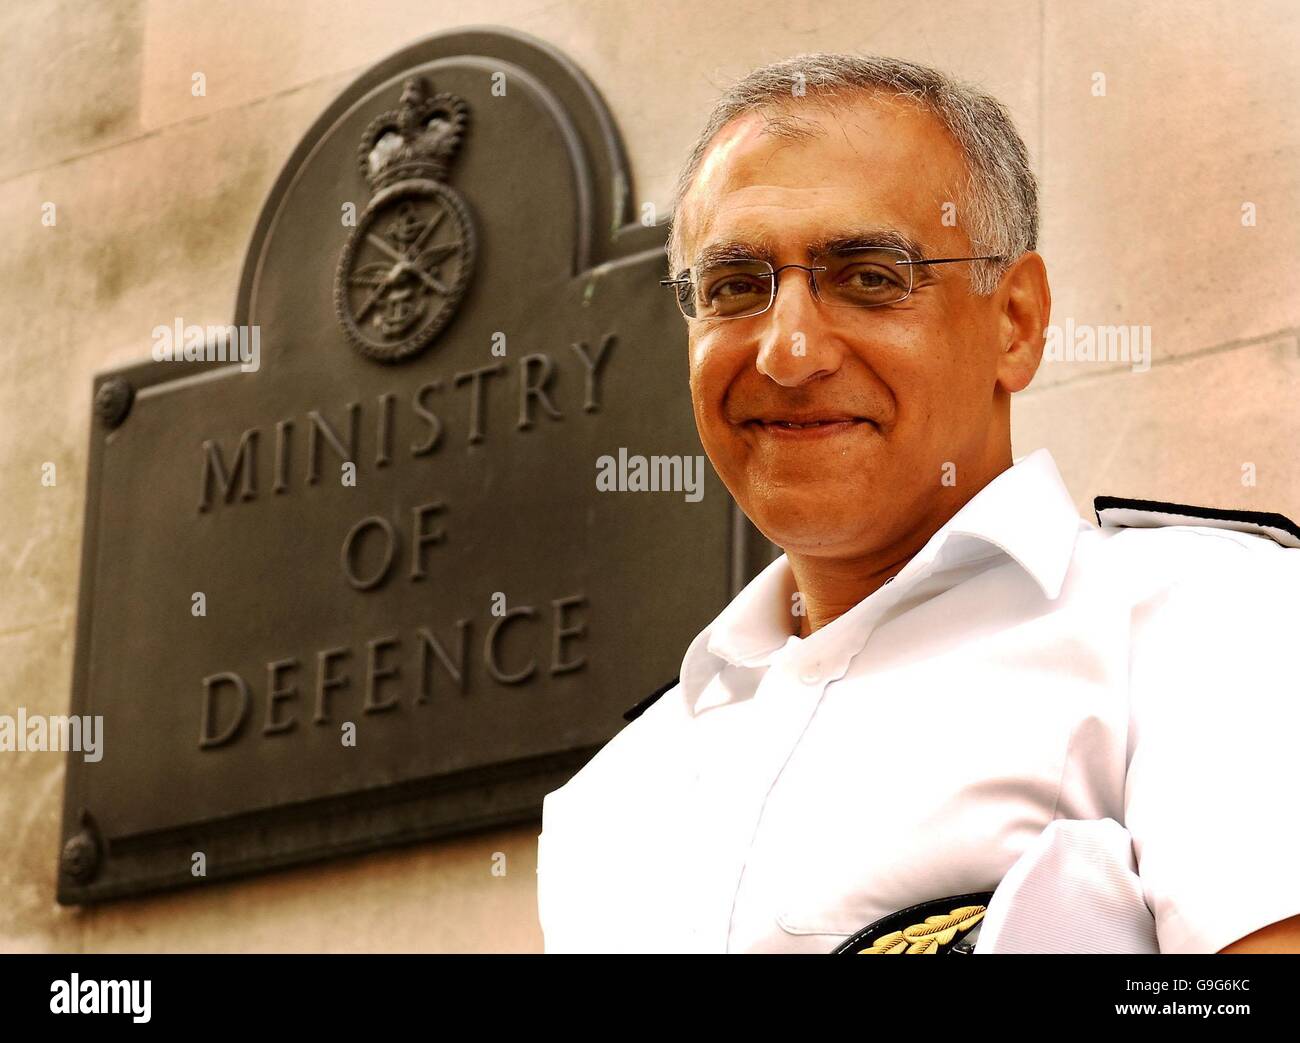 Amjad Hussain, il più alto ufficiale navale musulmano della Gran Bretagna, al Ministero della Difesa, nel centro di Londra, dopo essere stato promosso ammiraglio posteriore. Foto Stock